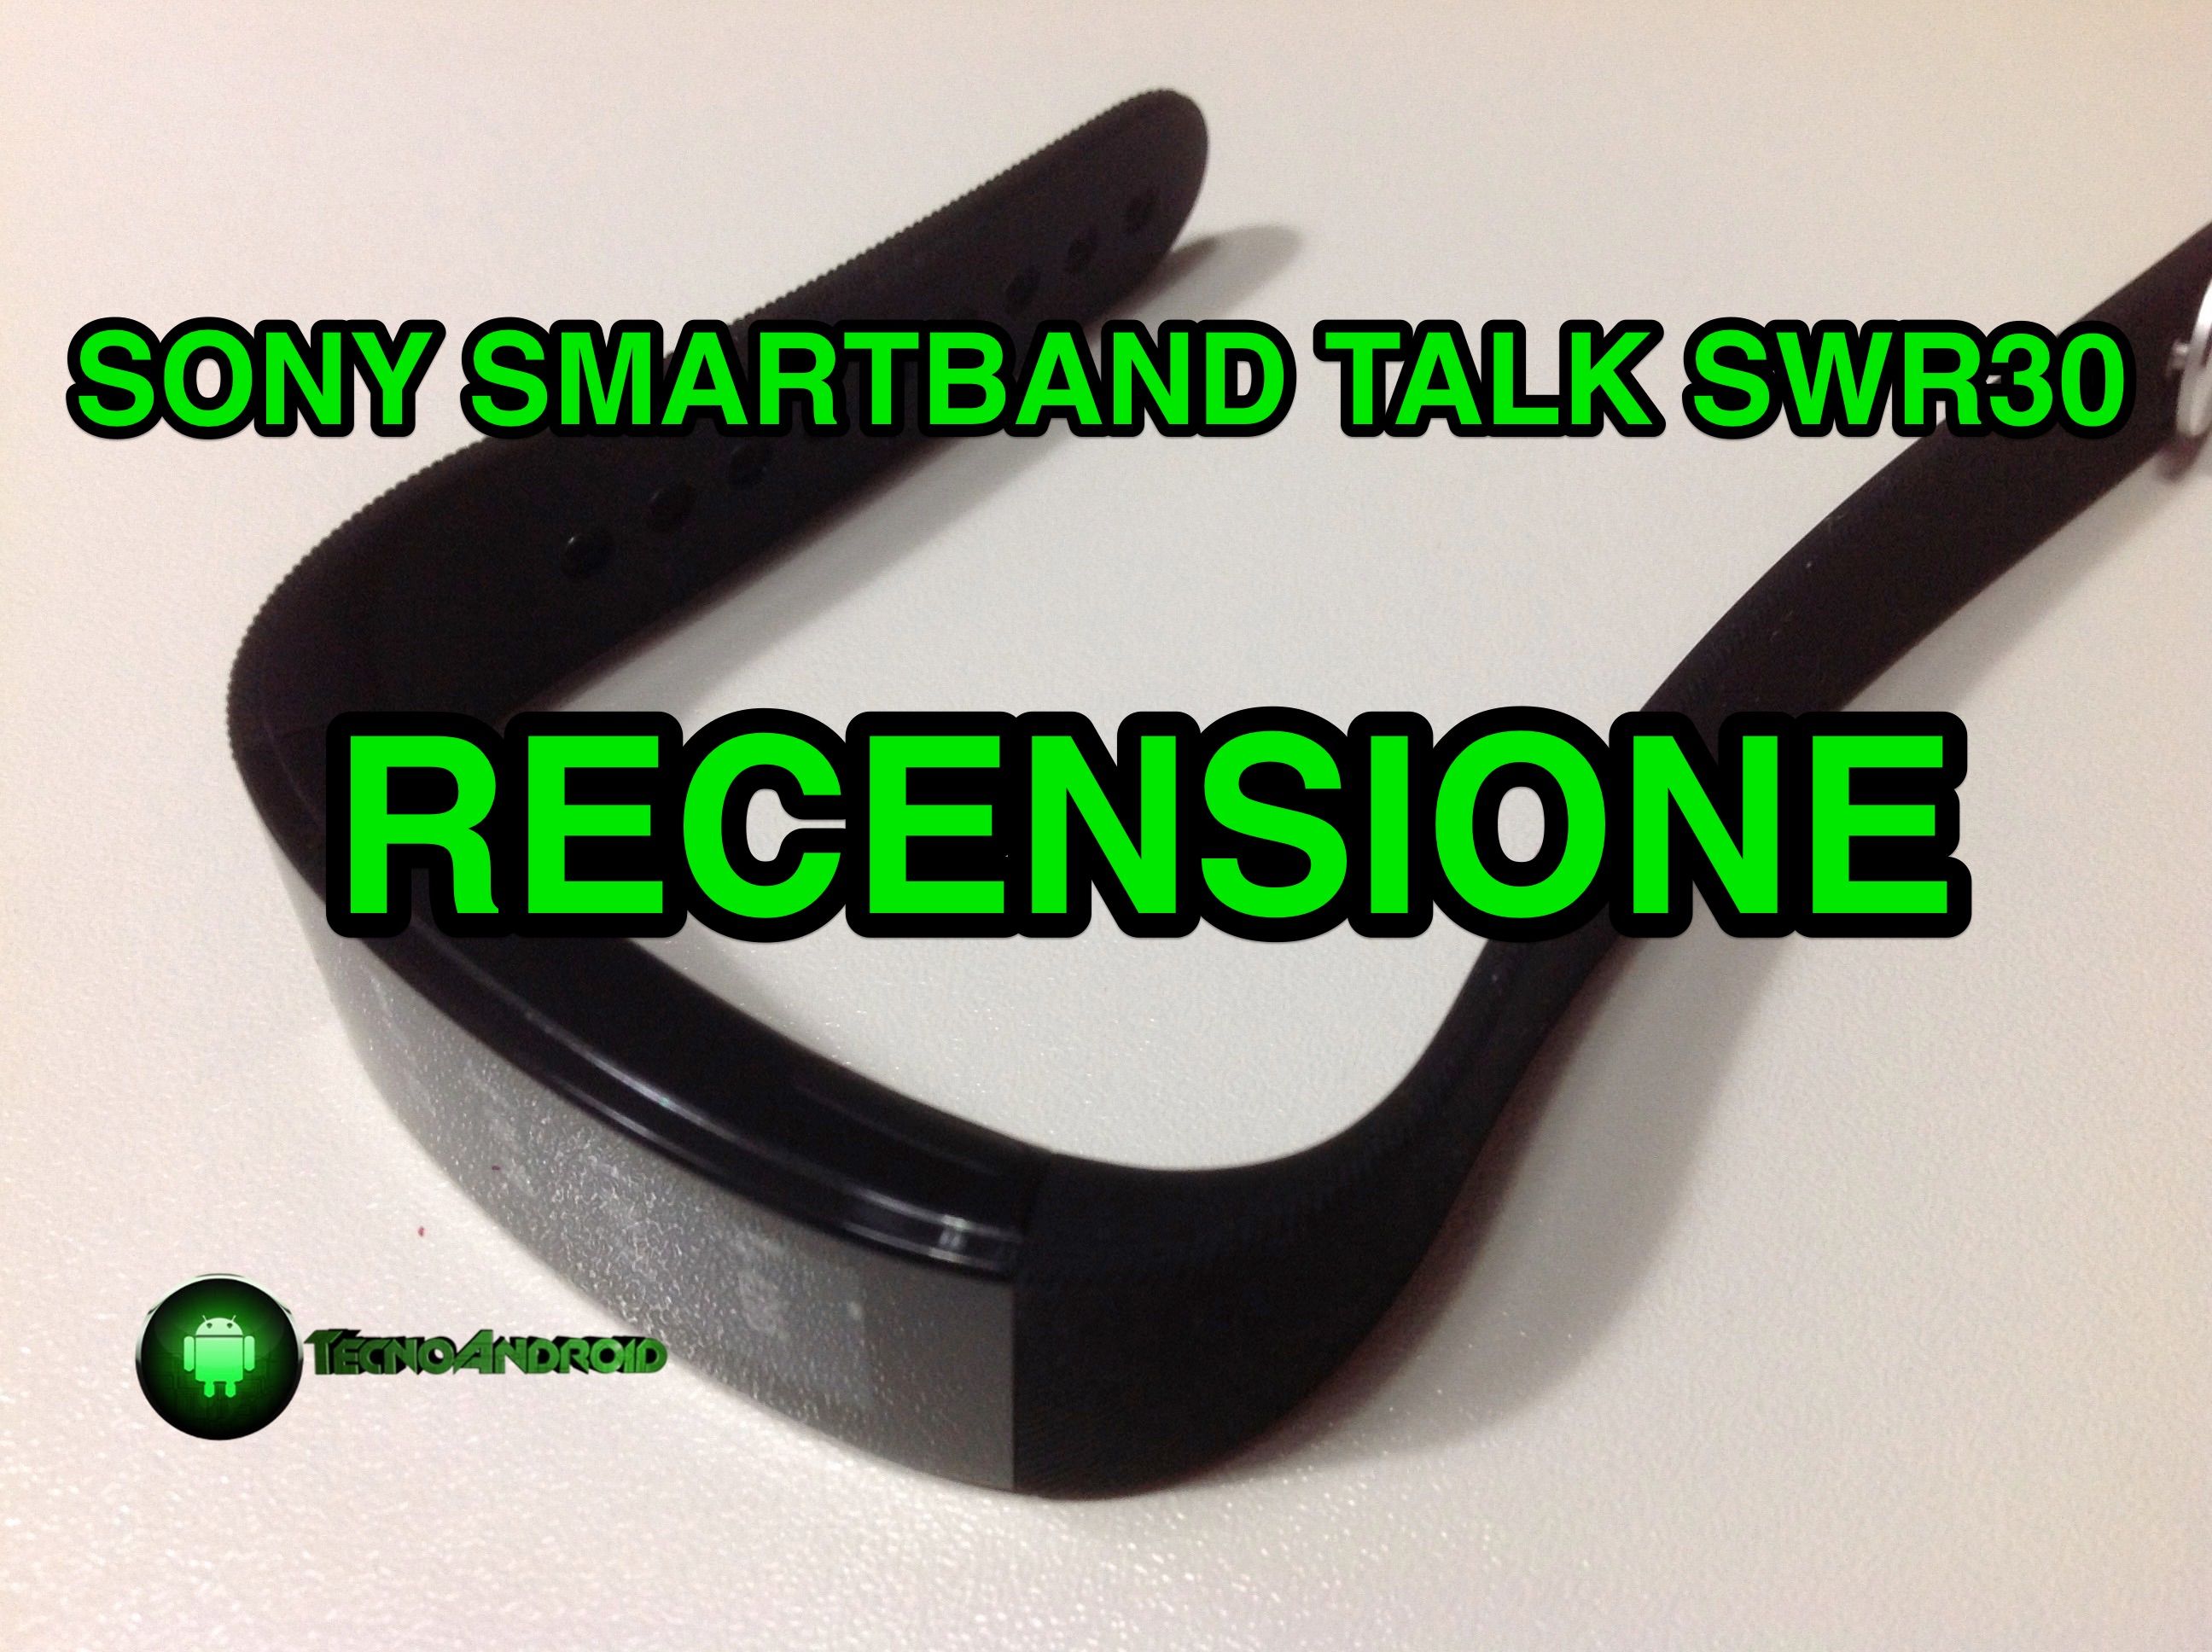 Sony Smartband Talk SWR30